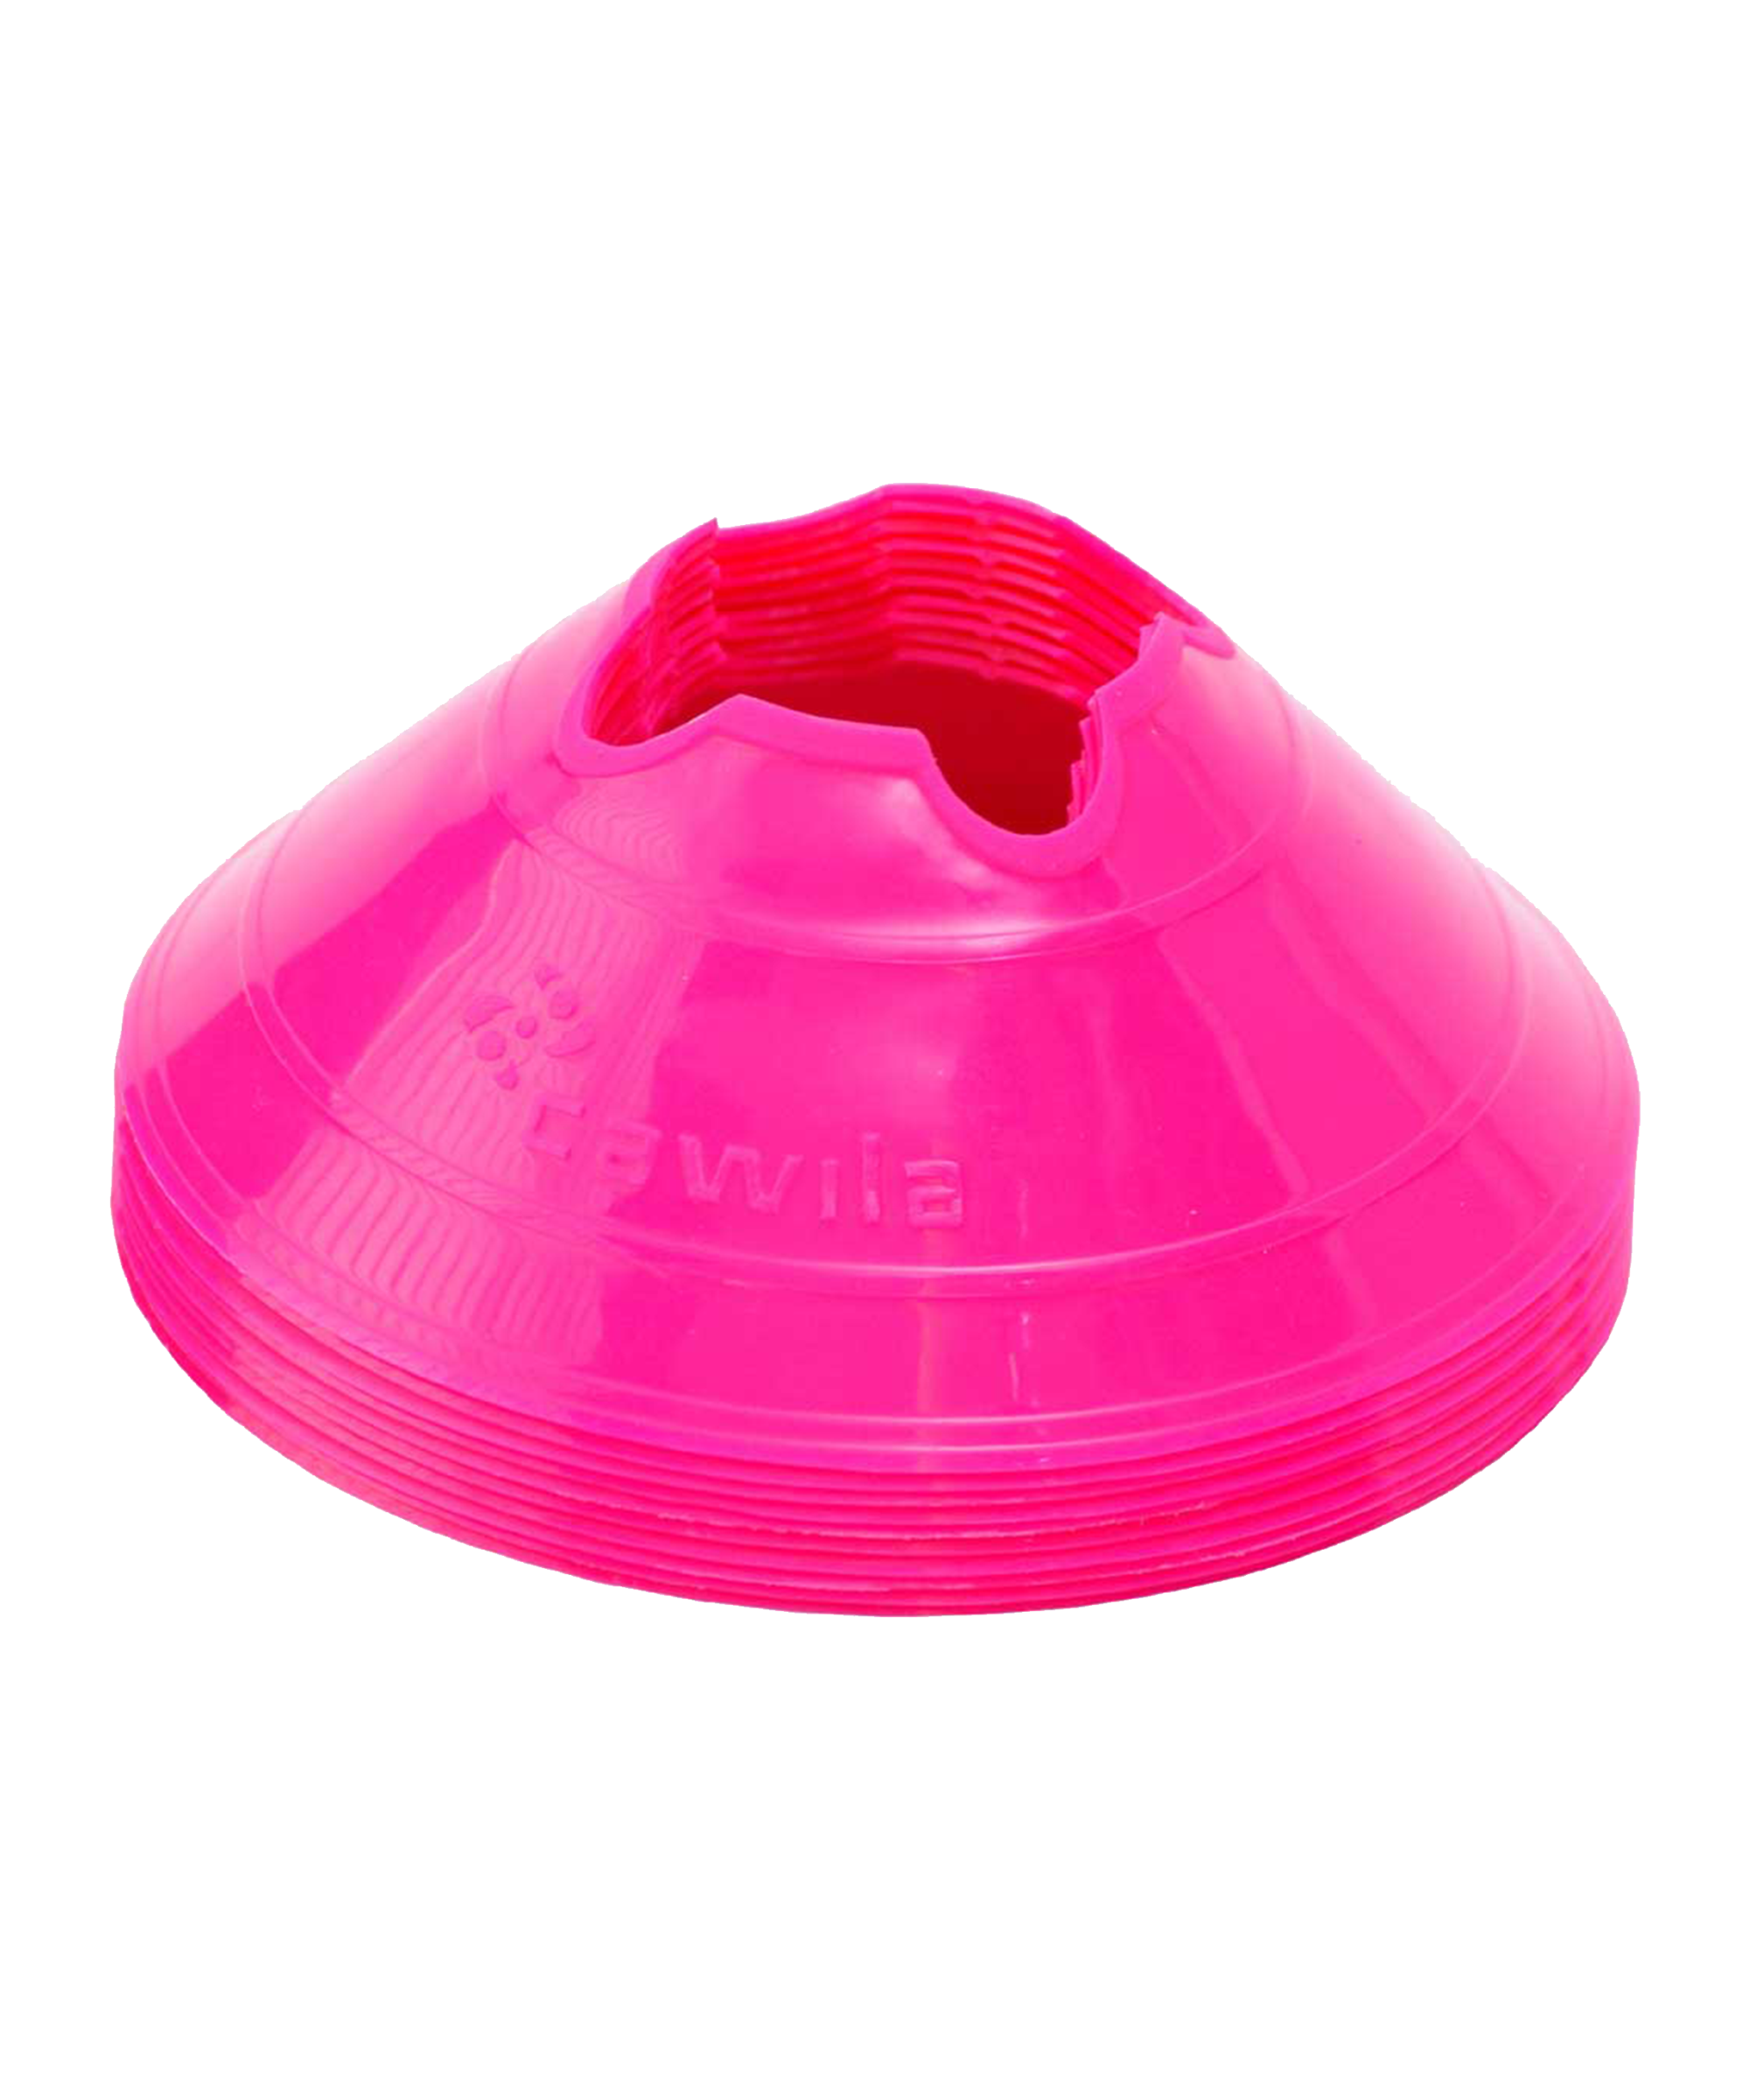 Cawila Markierungshauben M | 10er Set | Durchmesser 20cm, Höhe 6cm | pink